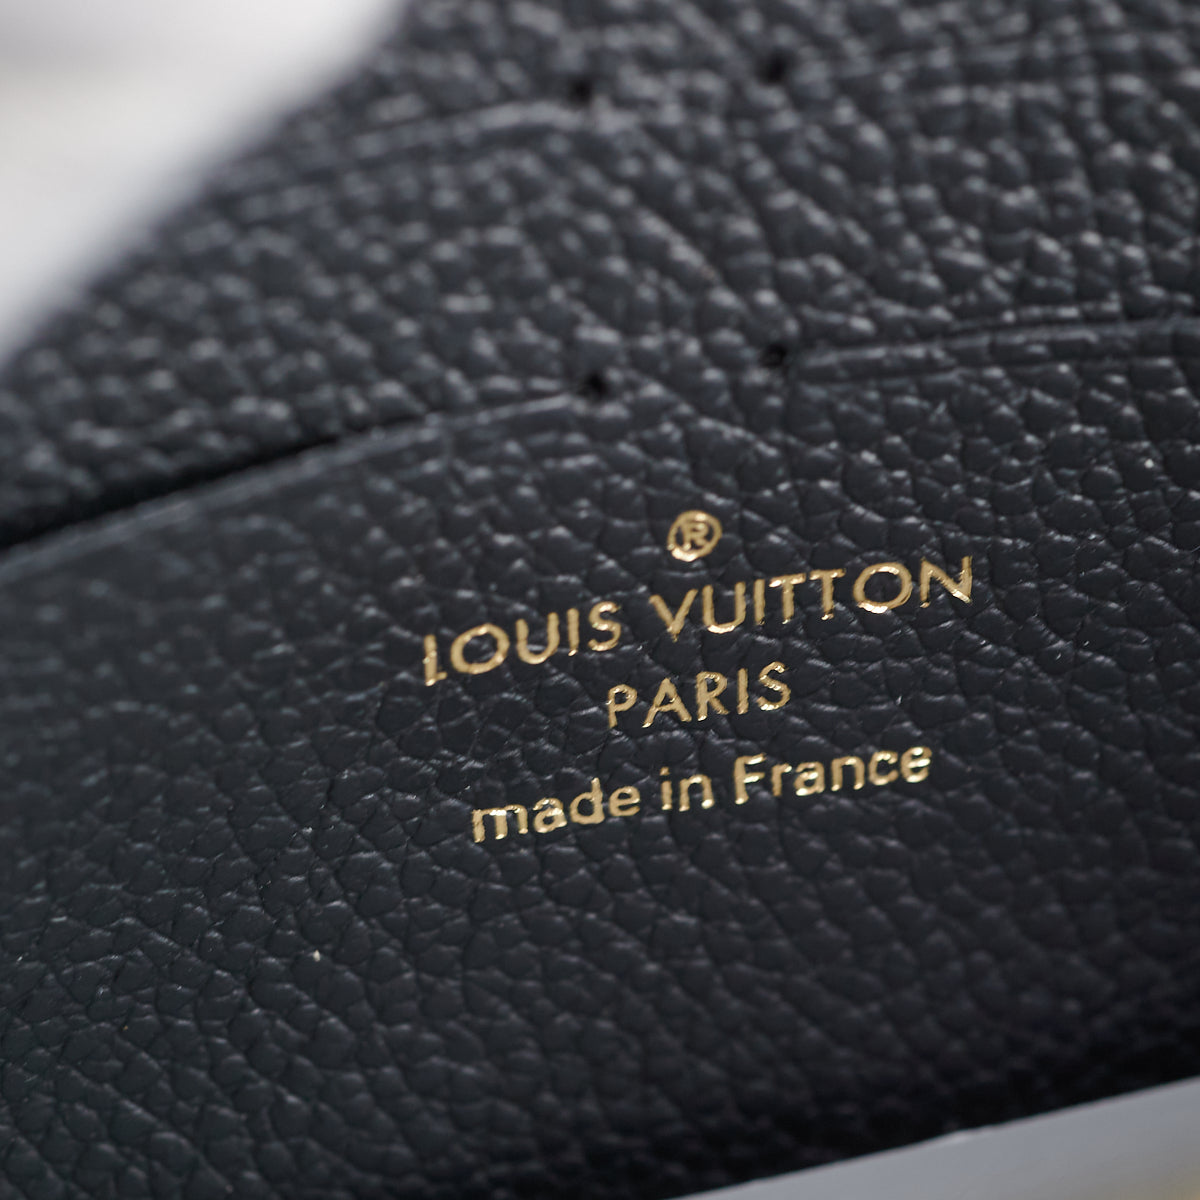 Louis Vuitton Vavin Chain Wallet Monogram Empreinte Leather Pink 2251541